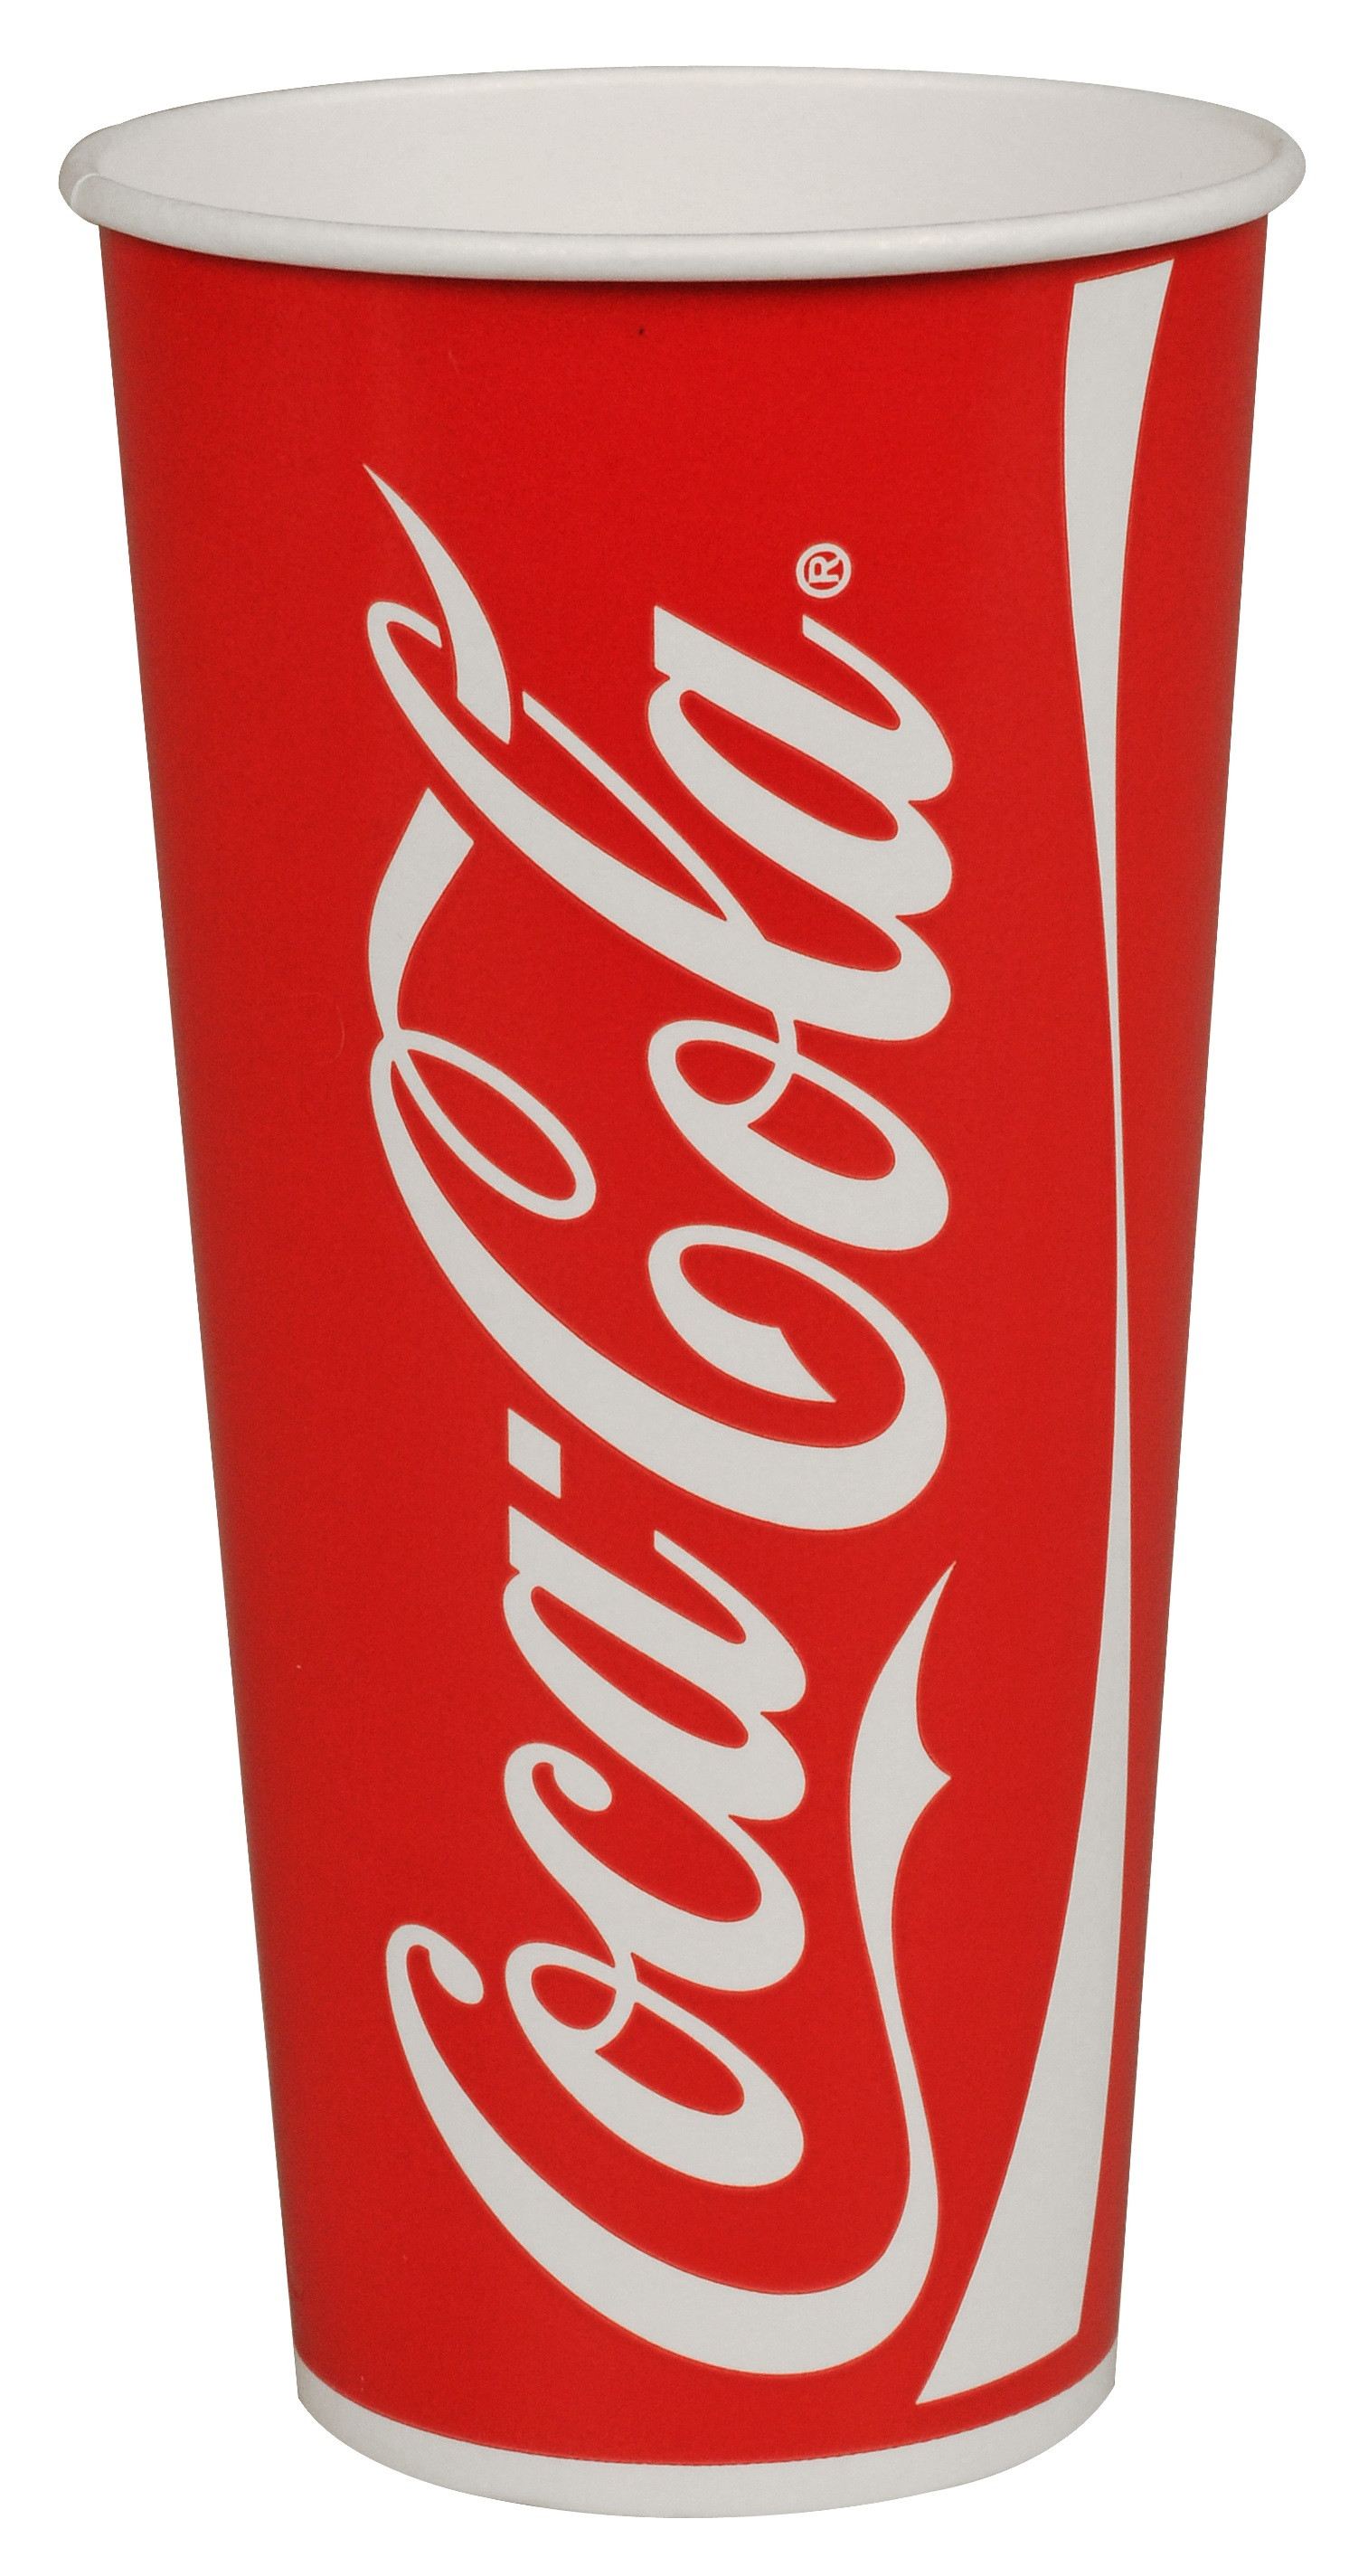 4: Coca-Cola bæger Rød/Hvid 75 cl 750 stk Ø10,5 x 17,9 cm, 32 oz